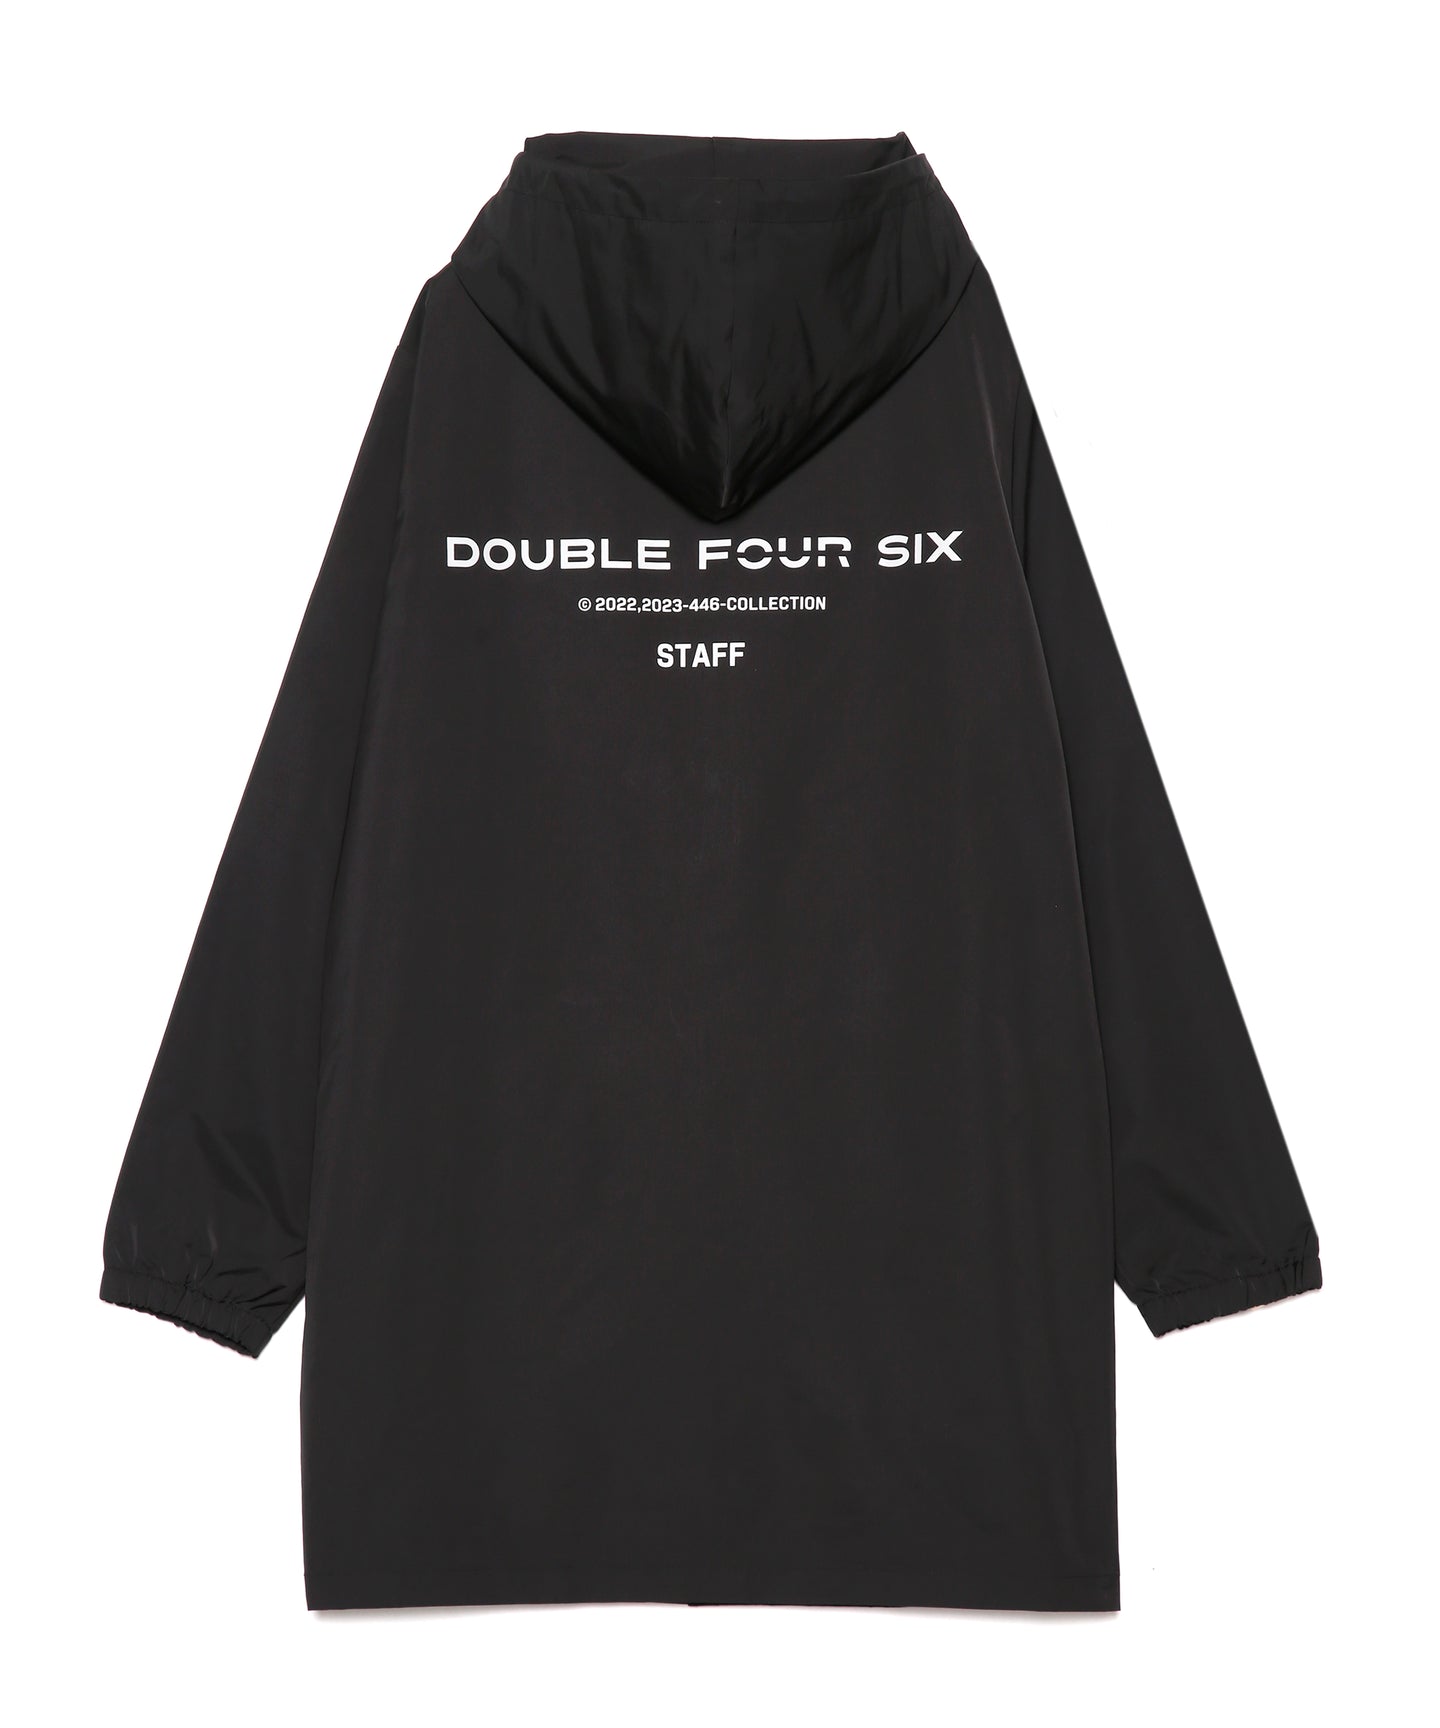 【数量限定商品】DOUBLE FOUR SIX Limited Staff Jacket